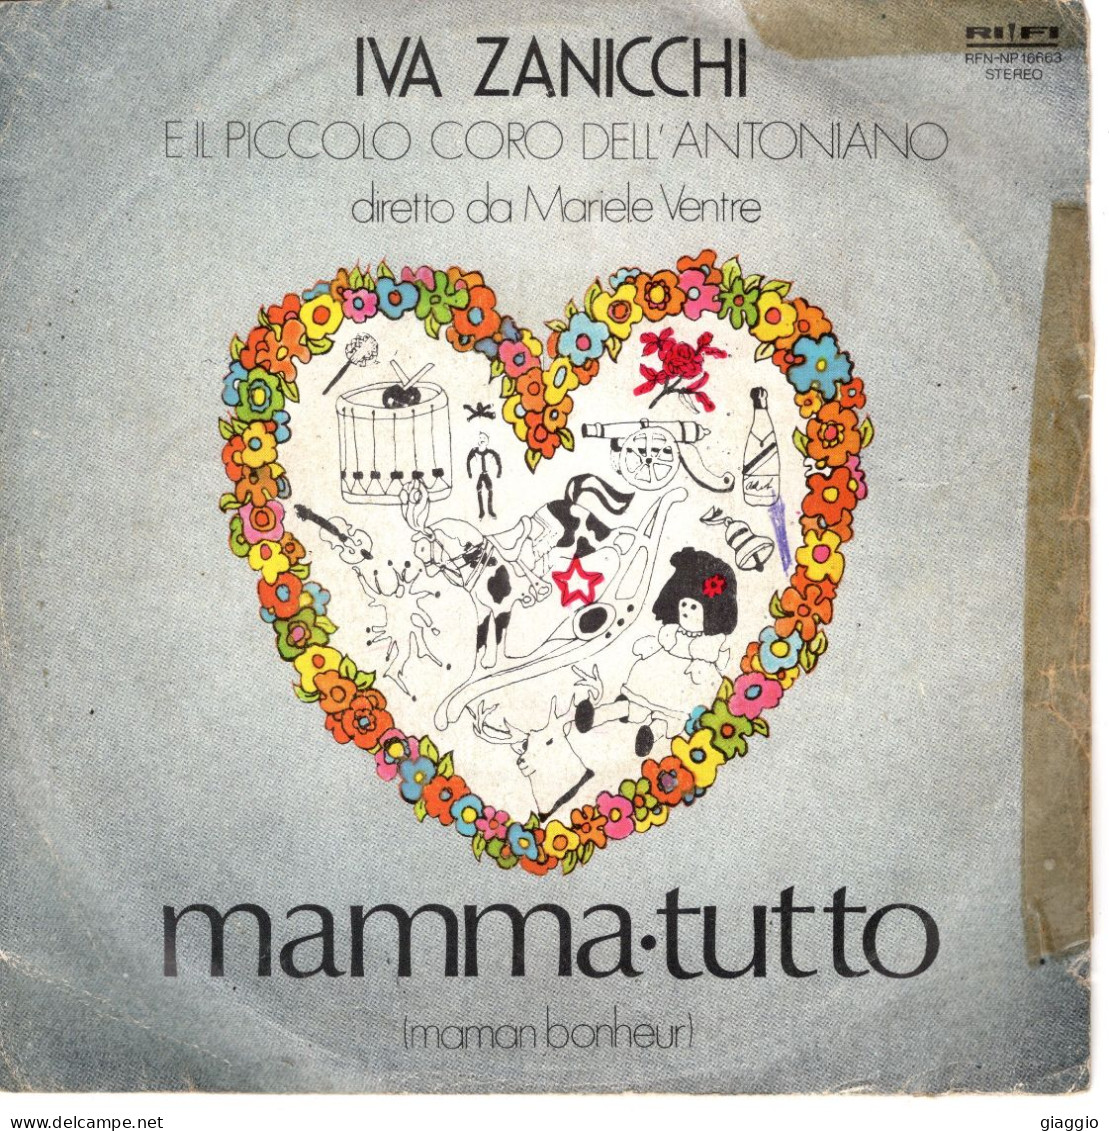 °°° 530) 45 GIRI - IVA ZANICCHI - DORMI AMORE DORMI / MAMMA TUTTO °°° - Otros - Canción Italiana